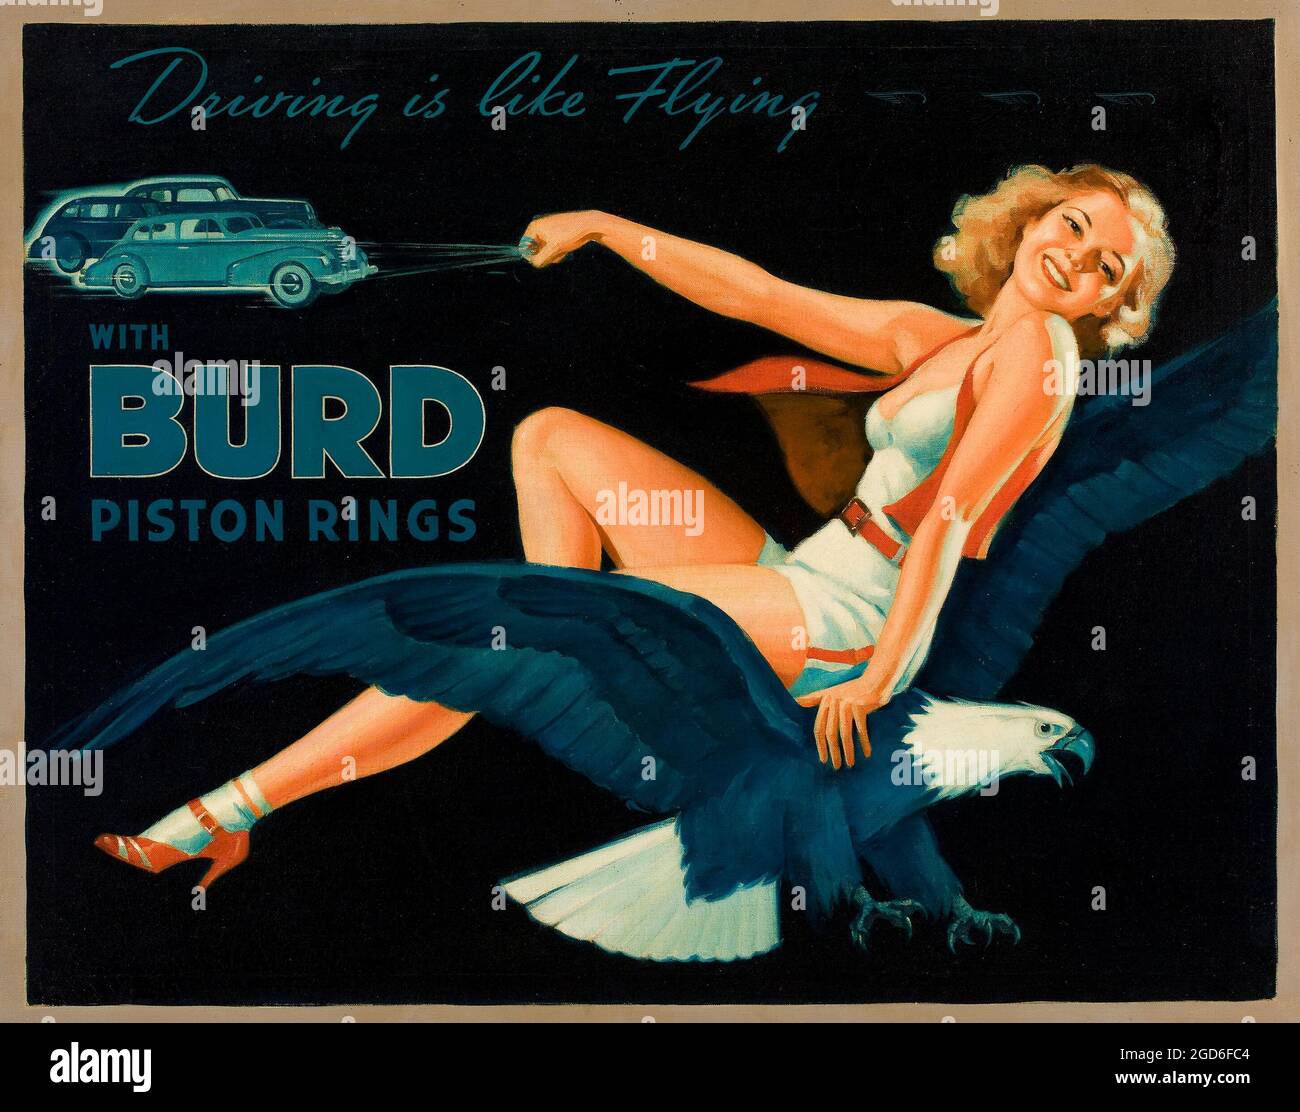 Alte und alte Werbung / Poster. Unbekannter Künstler (20. Jahrhundert). Fahren ist wie Fliegen, Burd Piston Rings und Illustration. Öl auf Leinwand Stockfoto